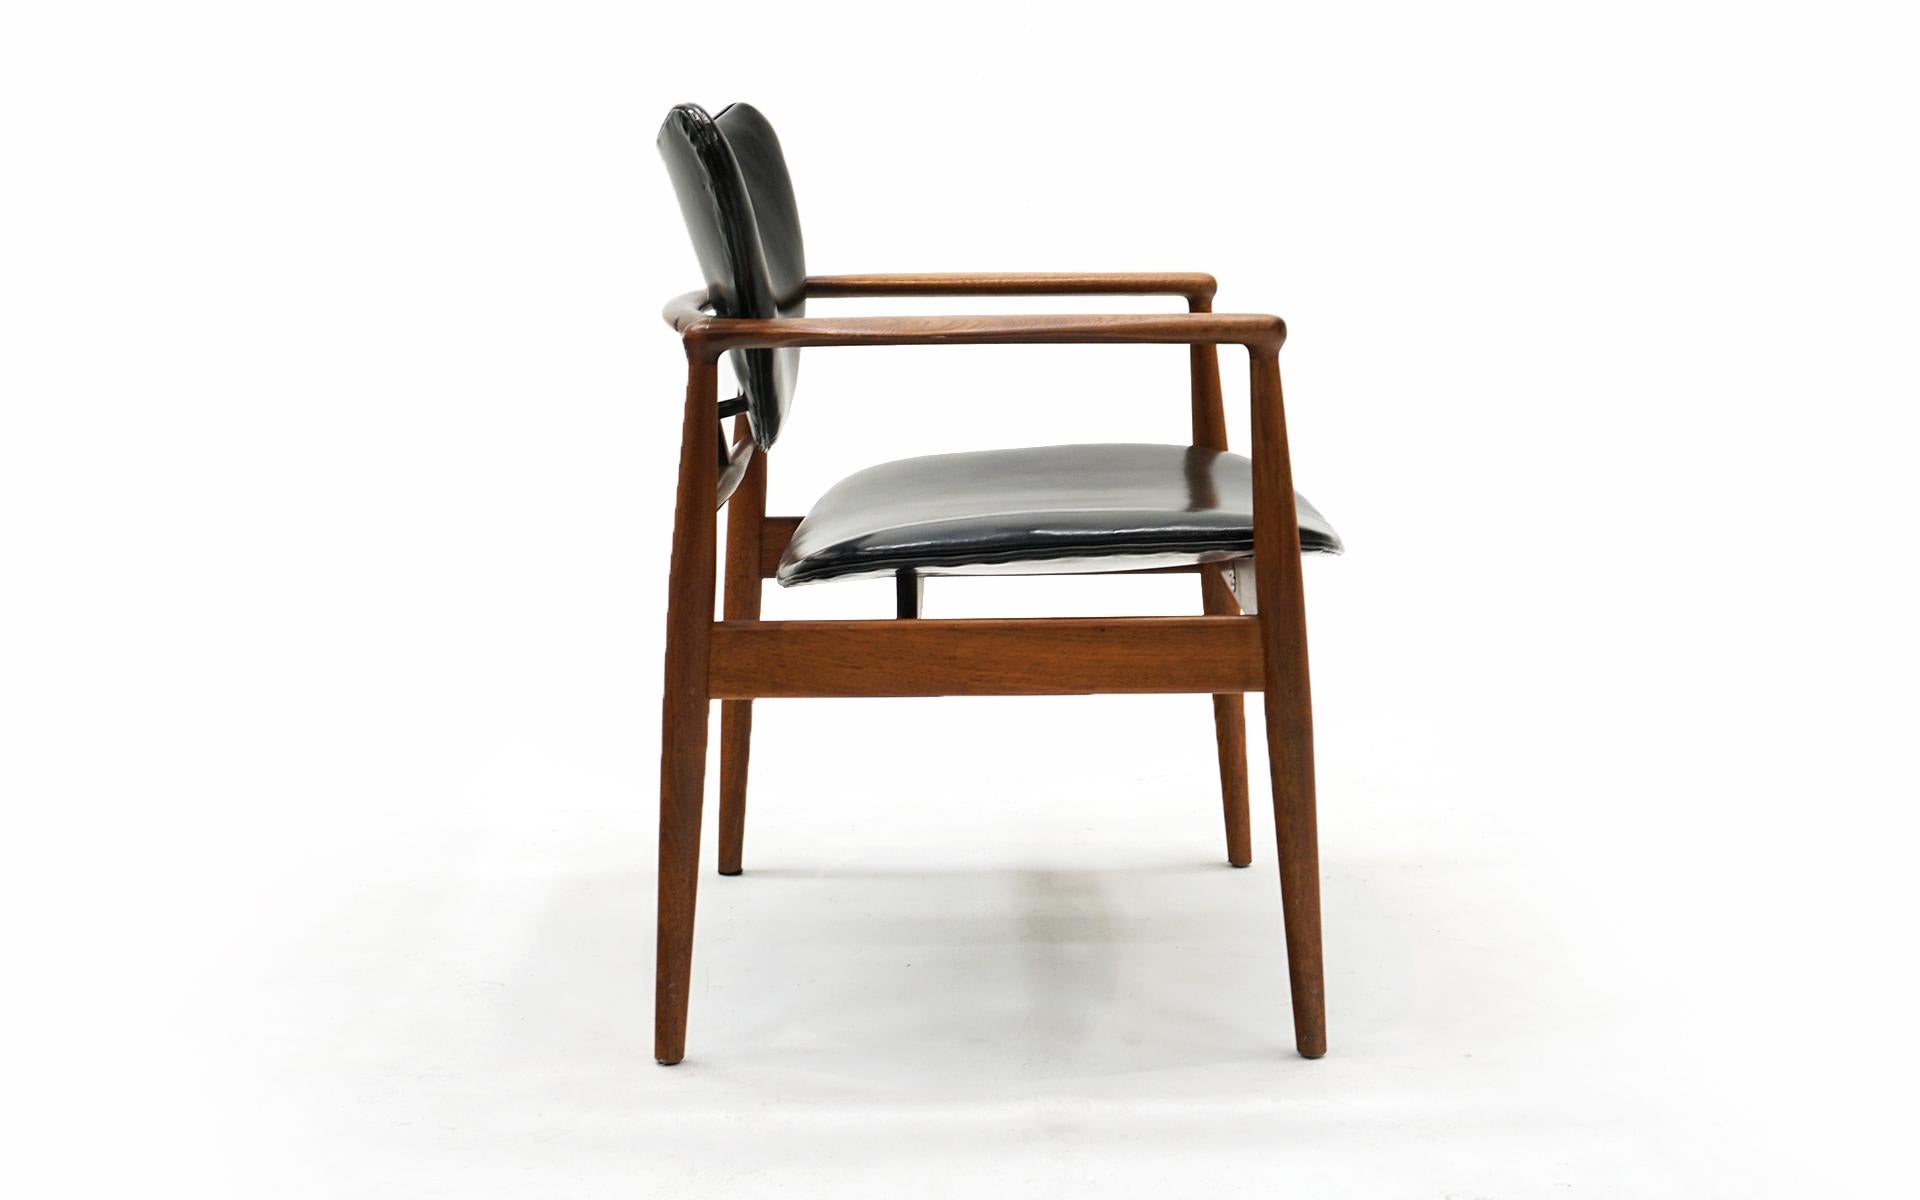 Mid-20th Century Original Finn Juhl Model 48 Chair for Baker. Black Leather, Teak Frame. Signed.